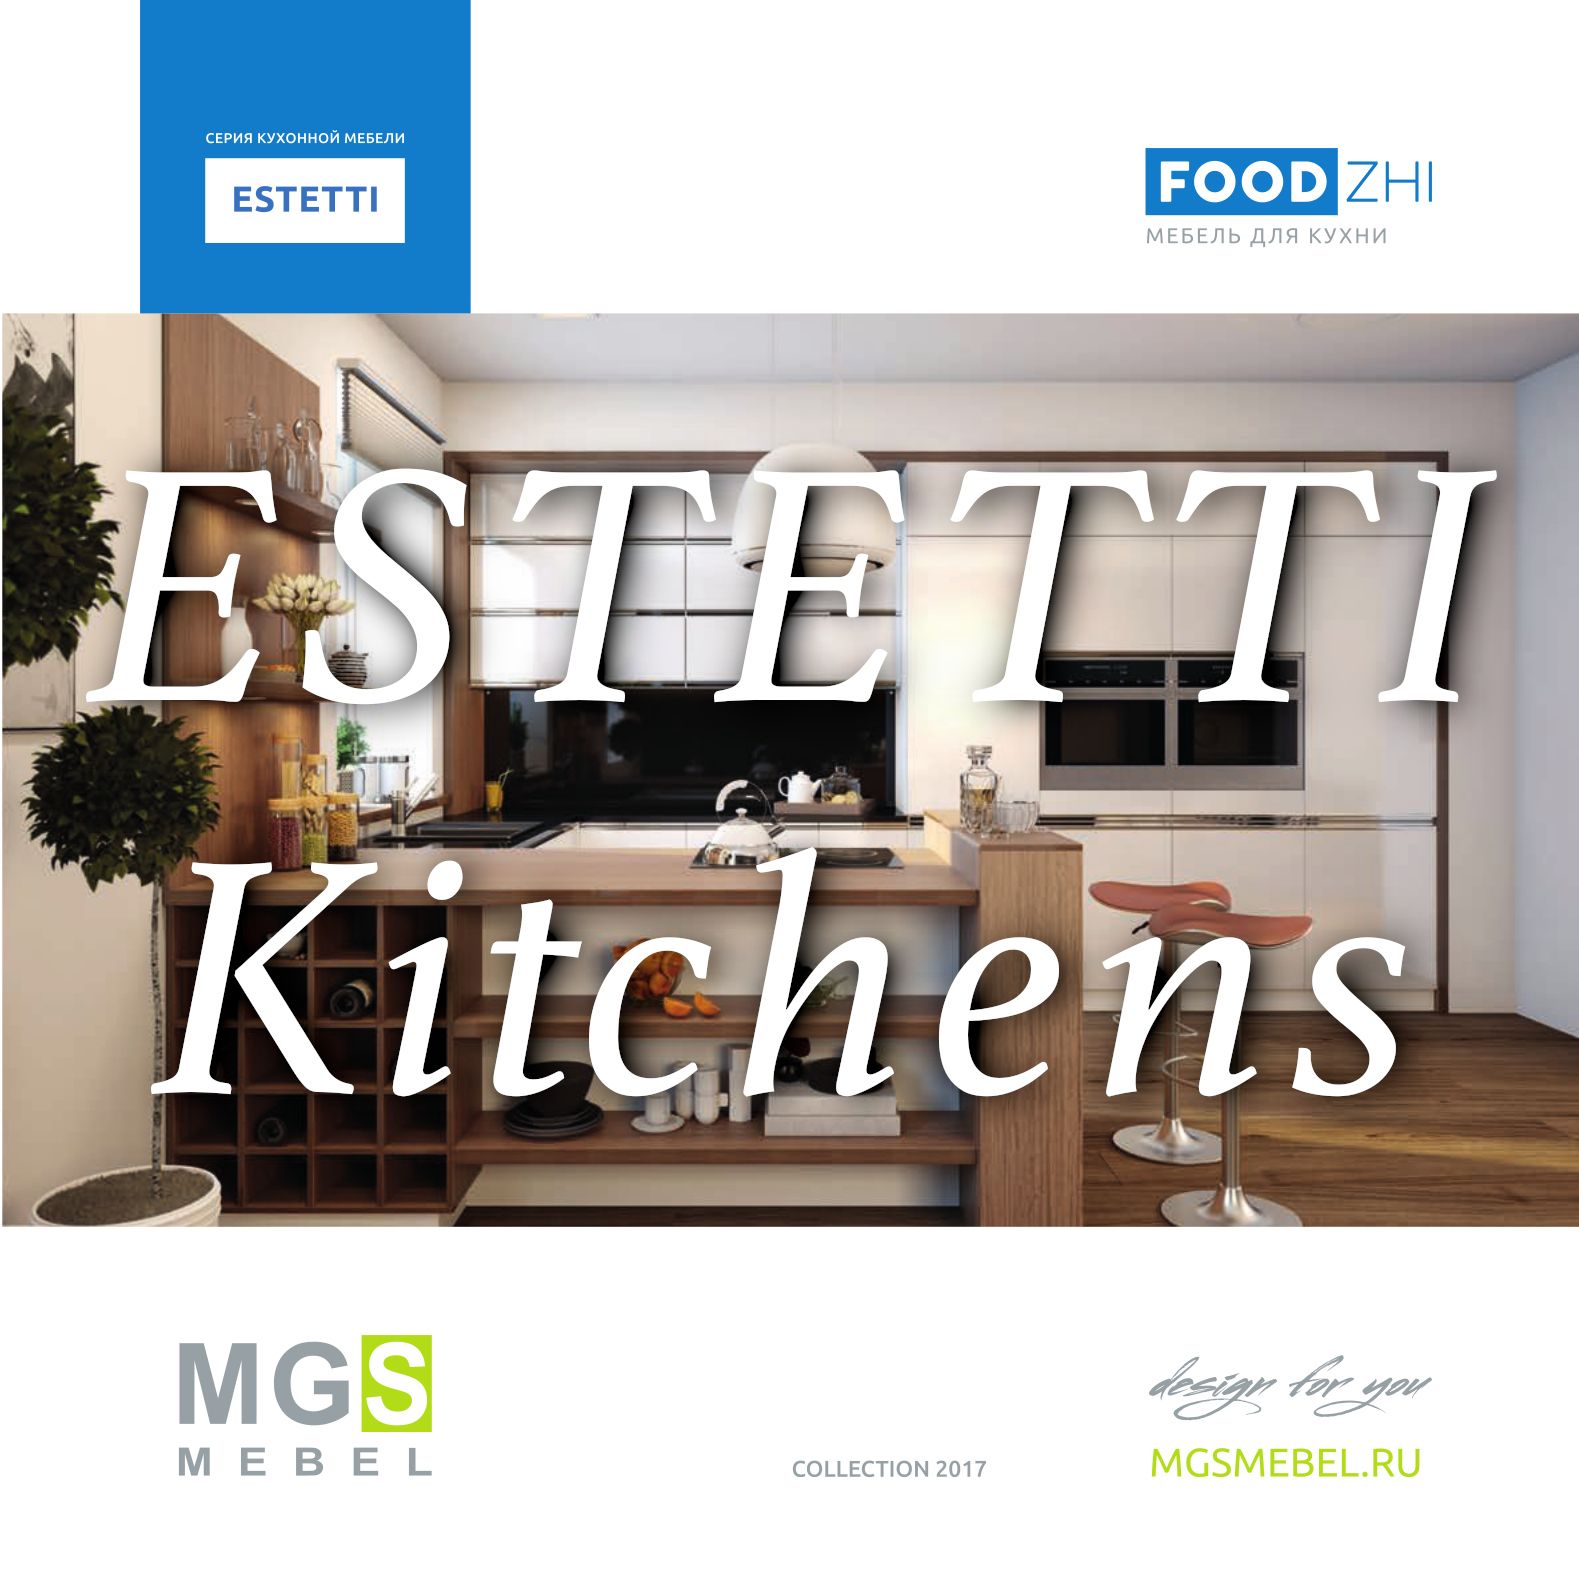 Katalog MGS Kitchens ESTETTI